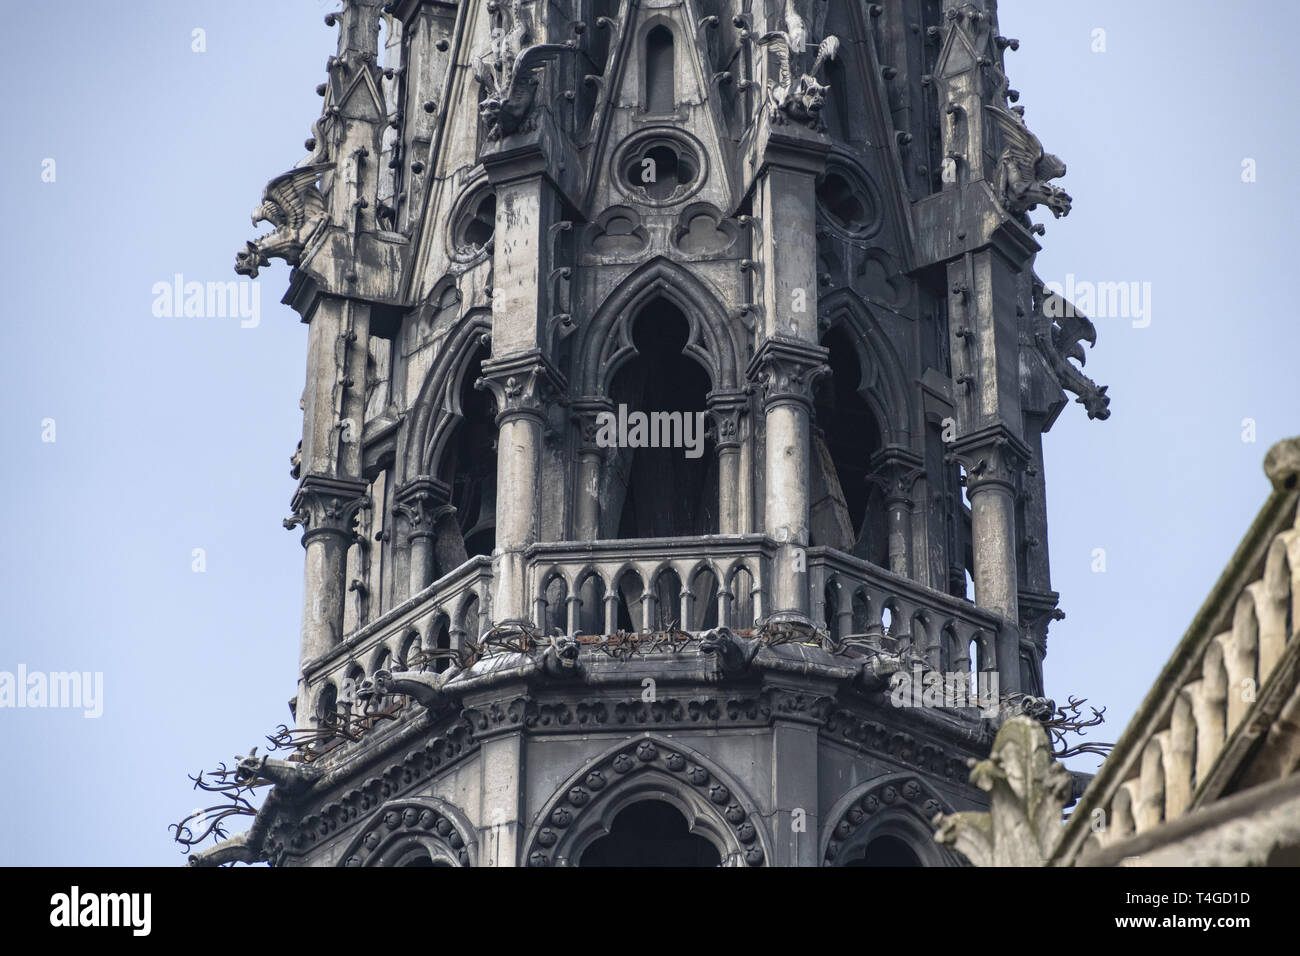 FRANCE Paris, Détail de la célèbre clocher de Notre Dame de Paris, une cathédrale gothique à Paris qui a été brûlée en 2019 Banque D'Images